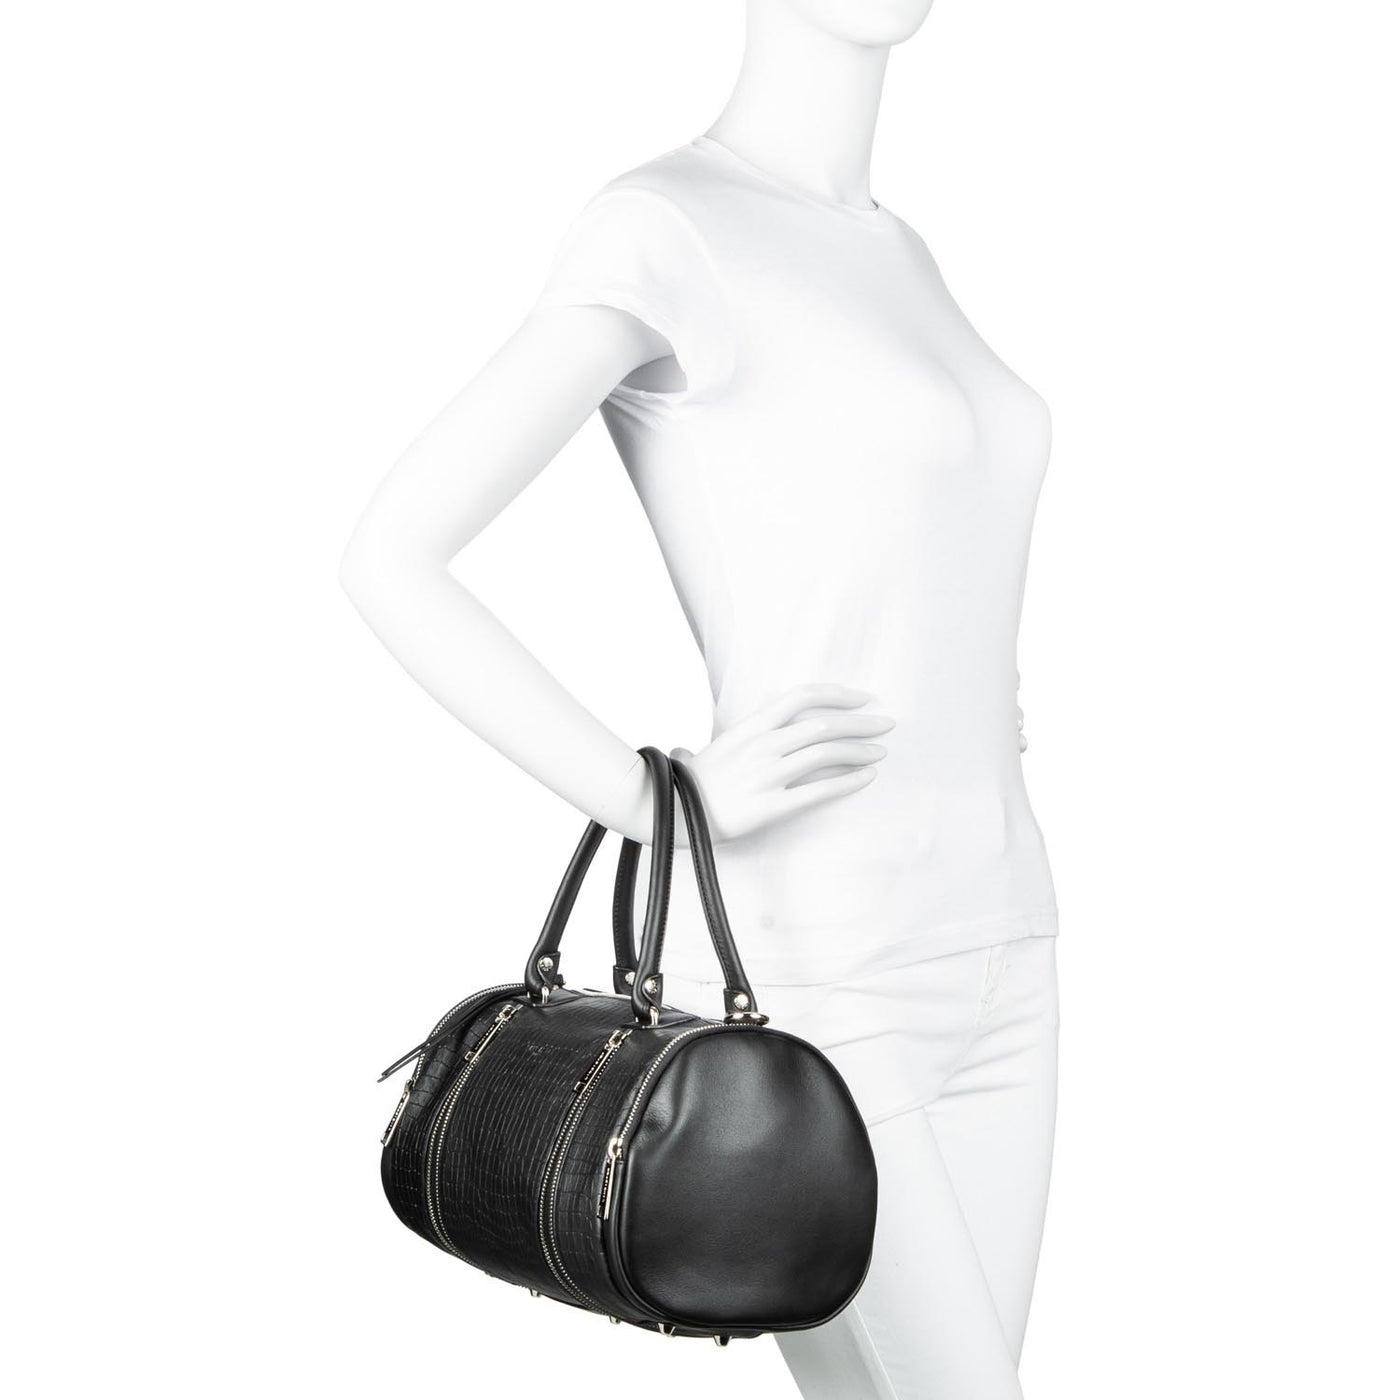 sac polochon - soft vintage #couleur_noir-croco